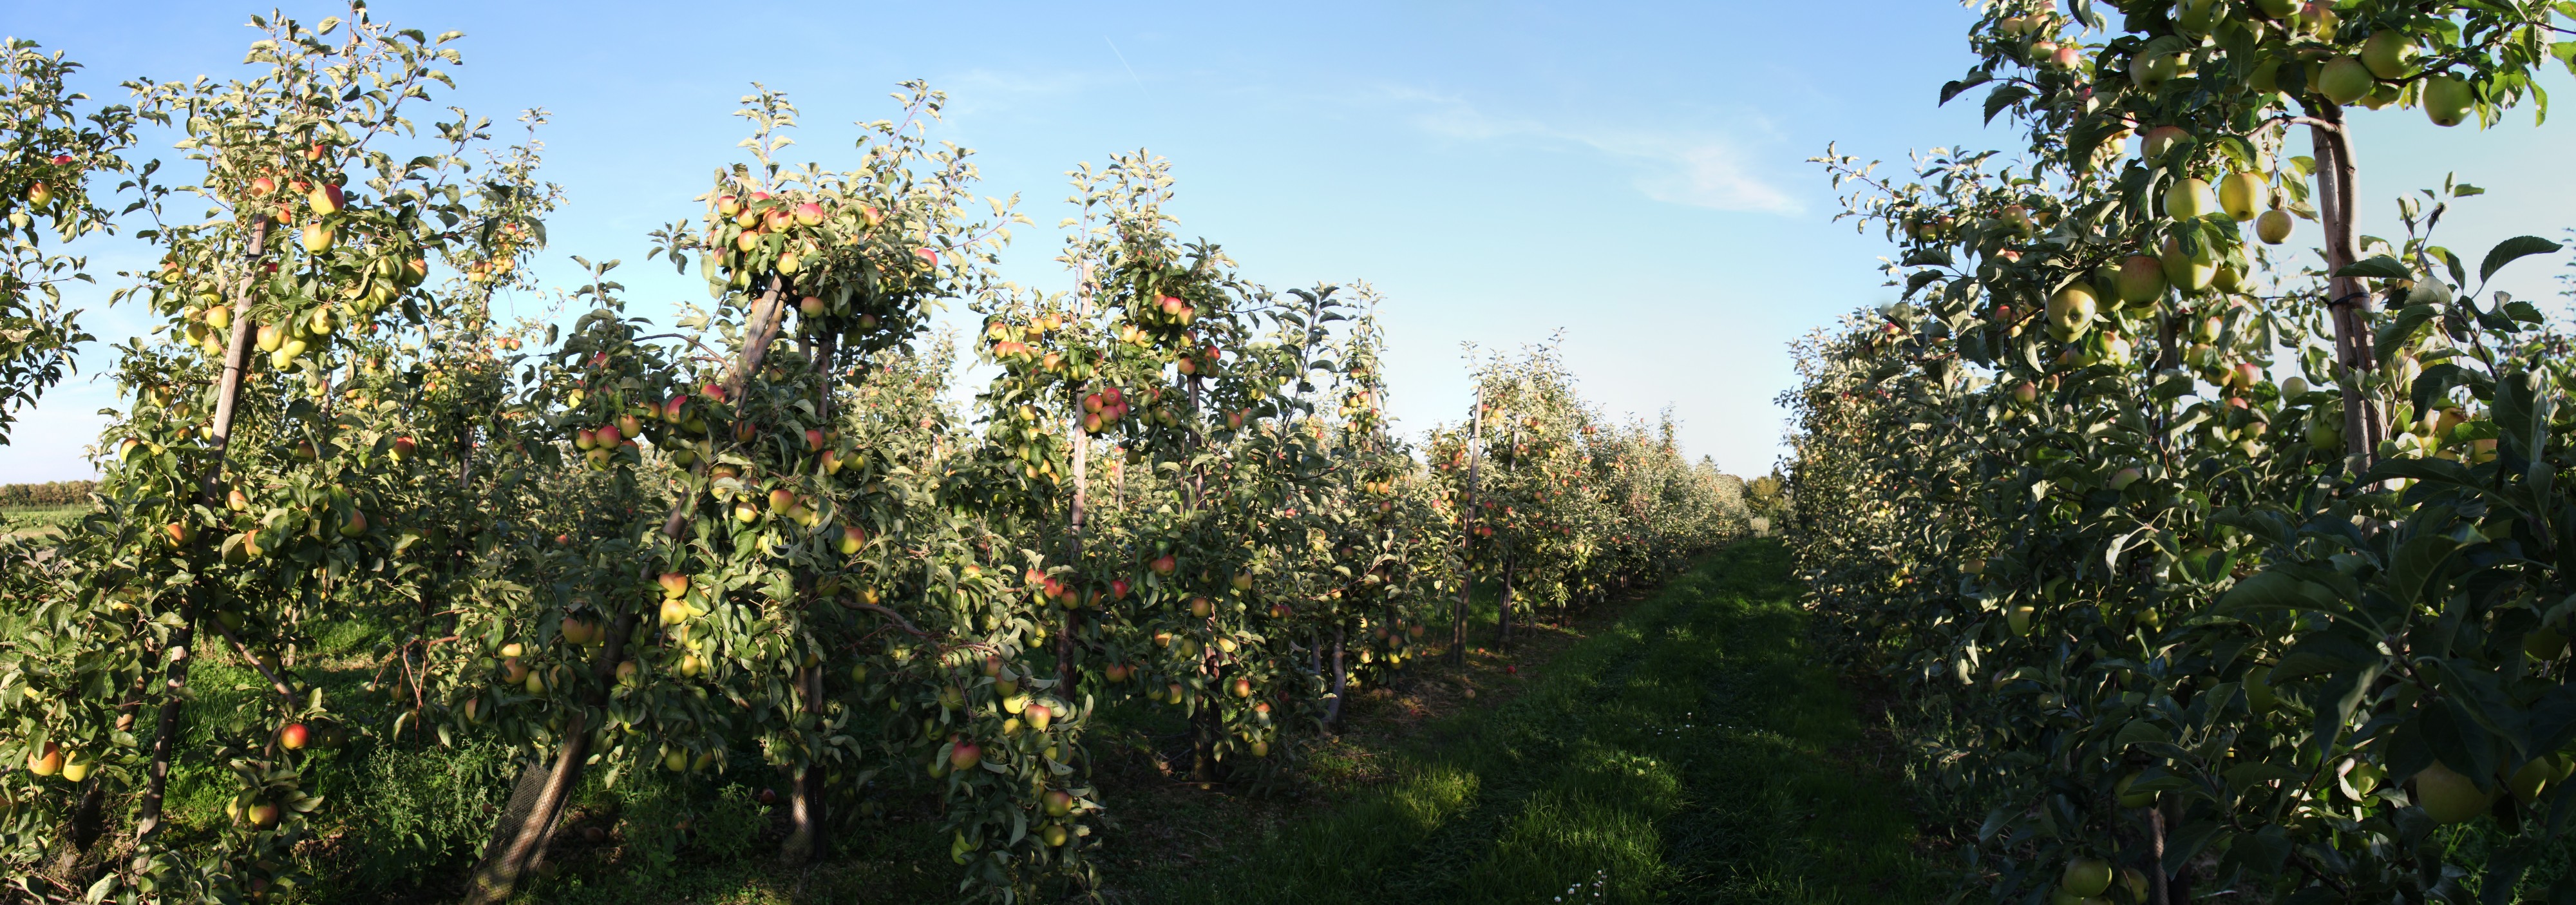 Apfelbaumplantage bei Gelsdorf